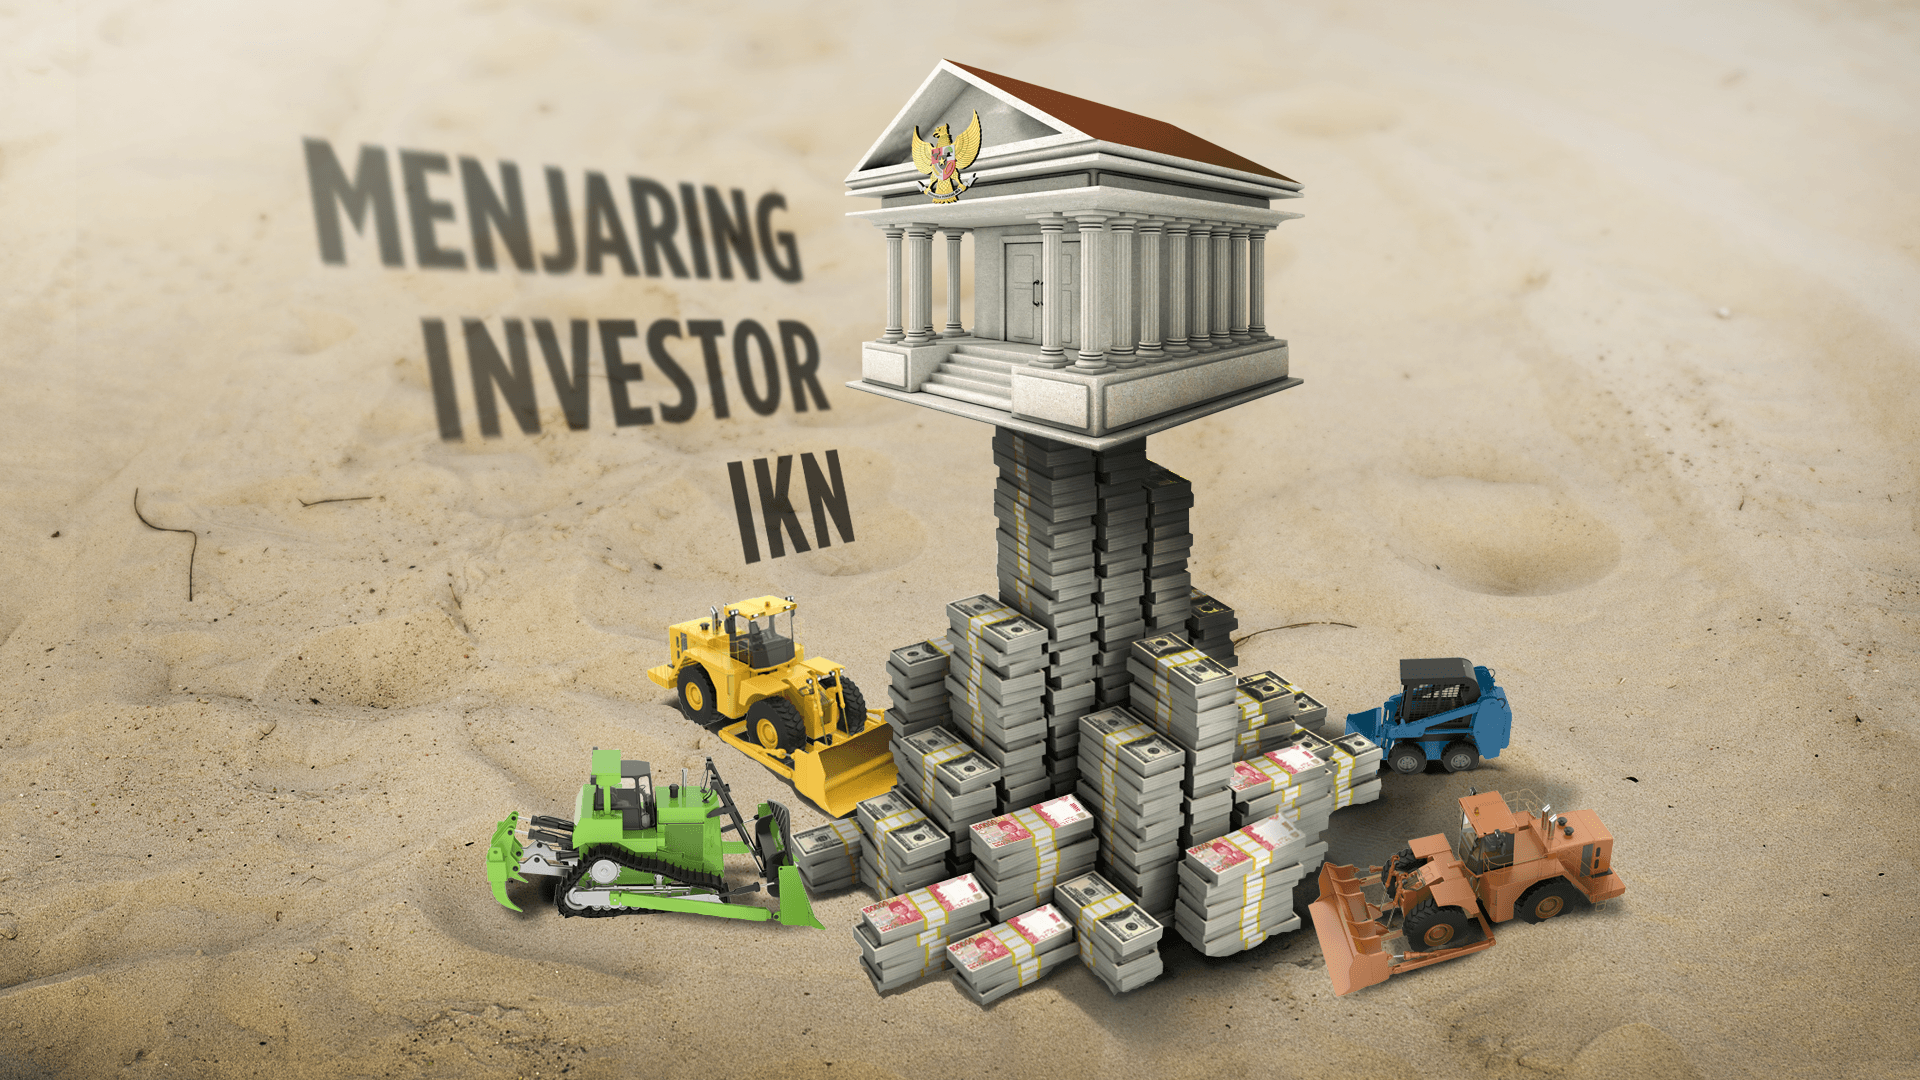 Gerilya Menjaring Investor IKN